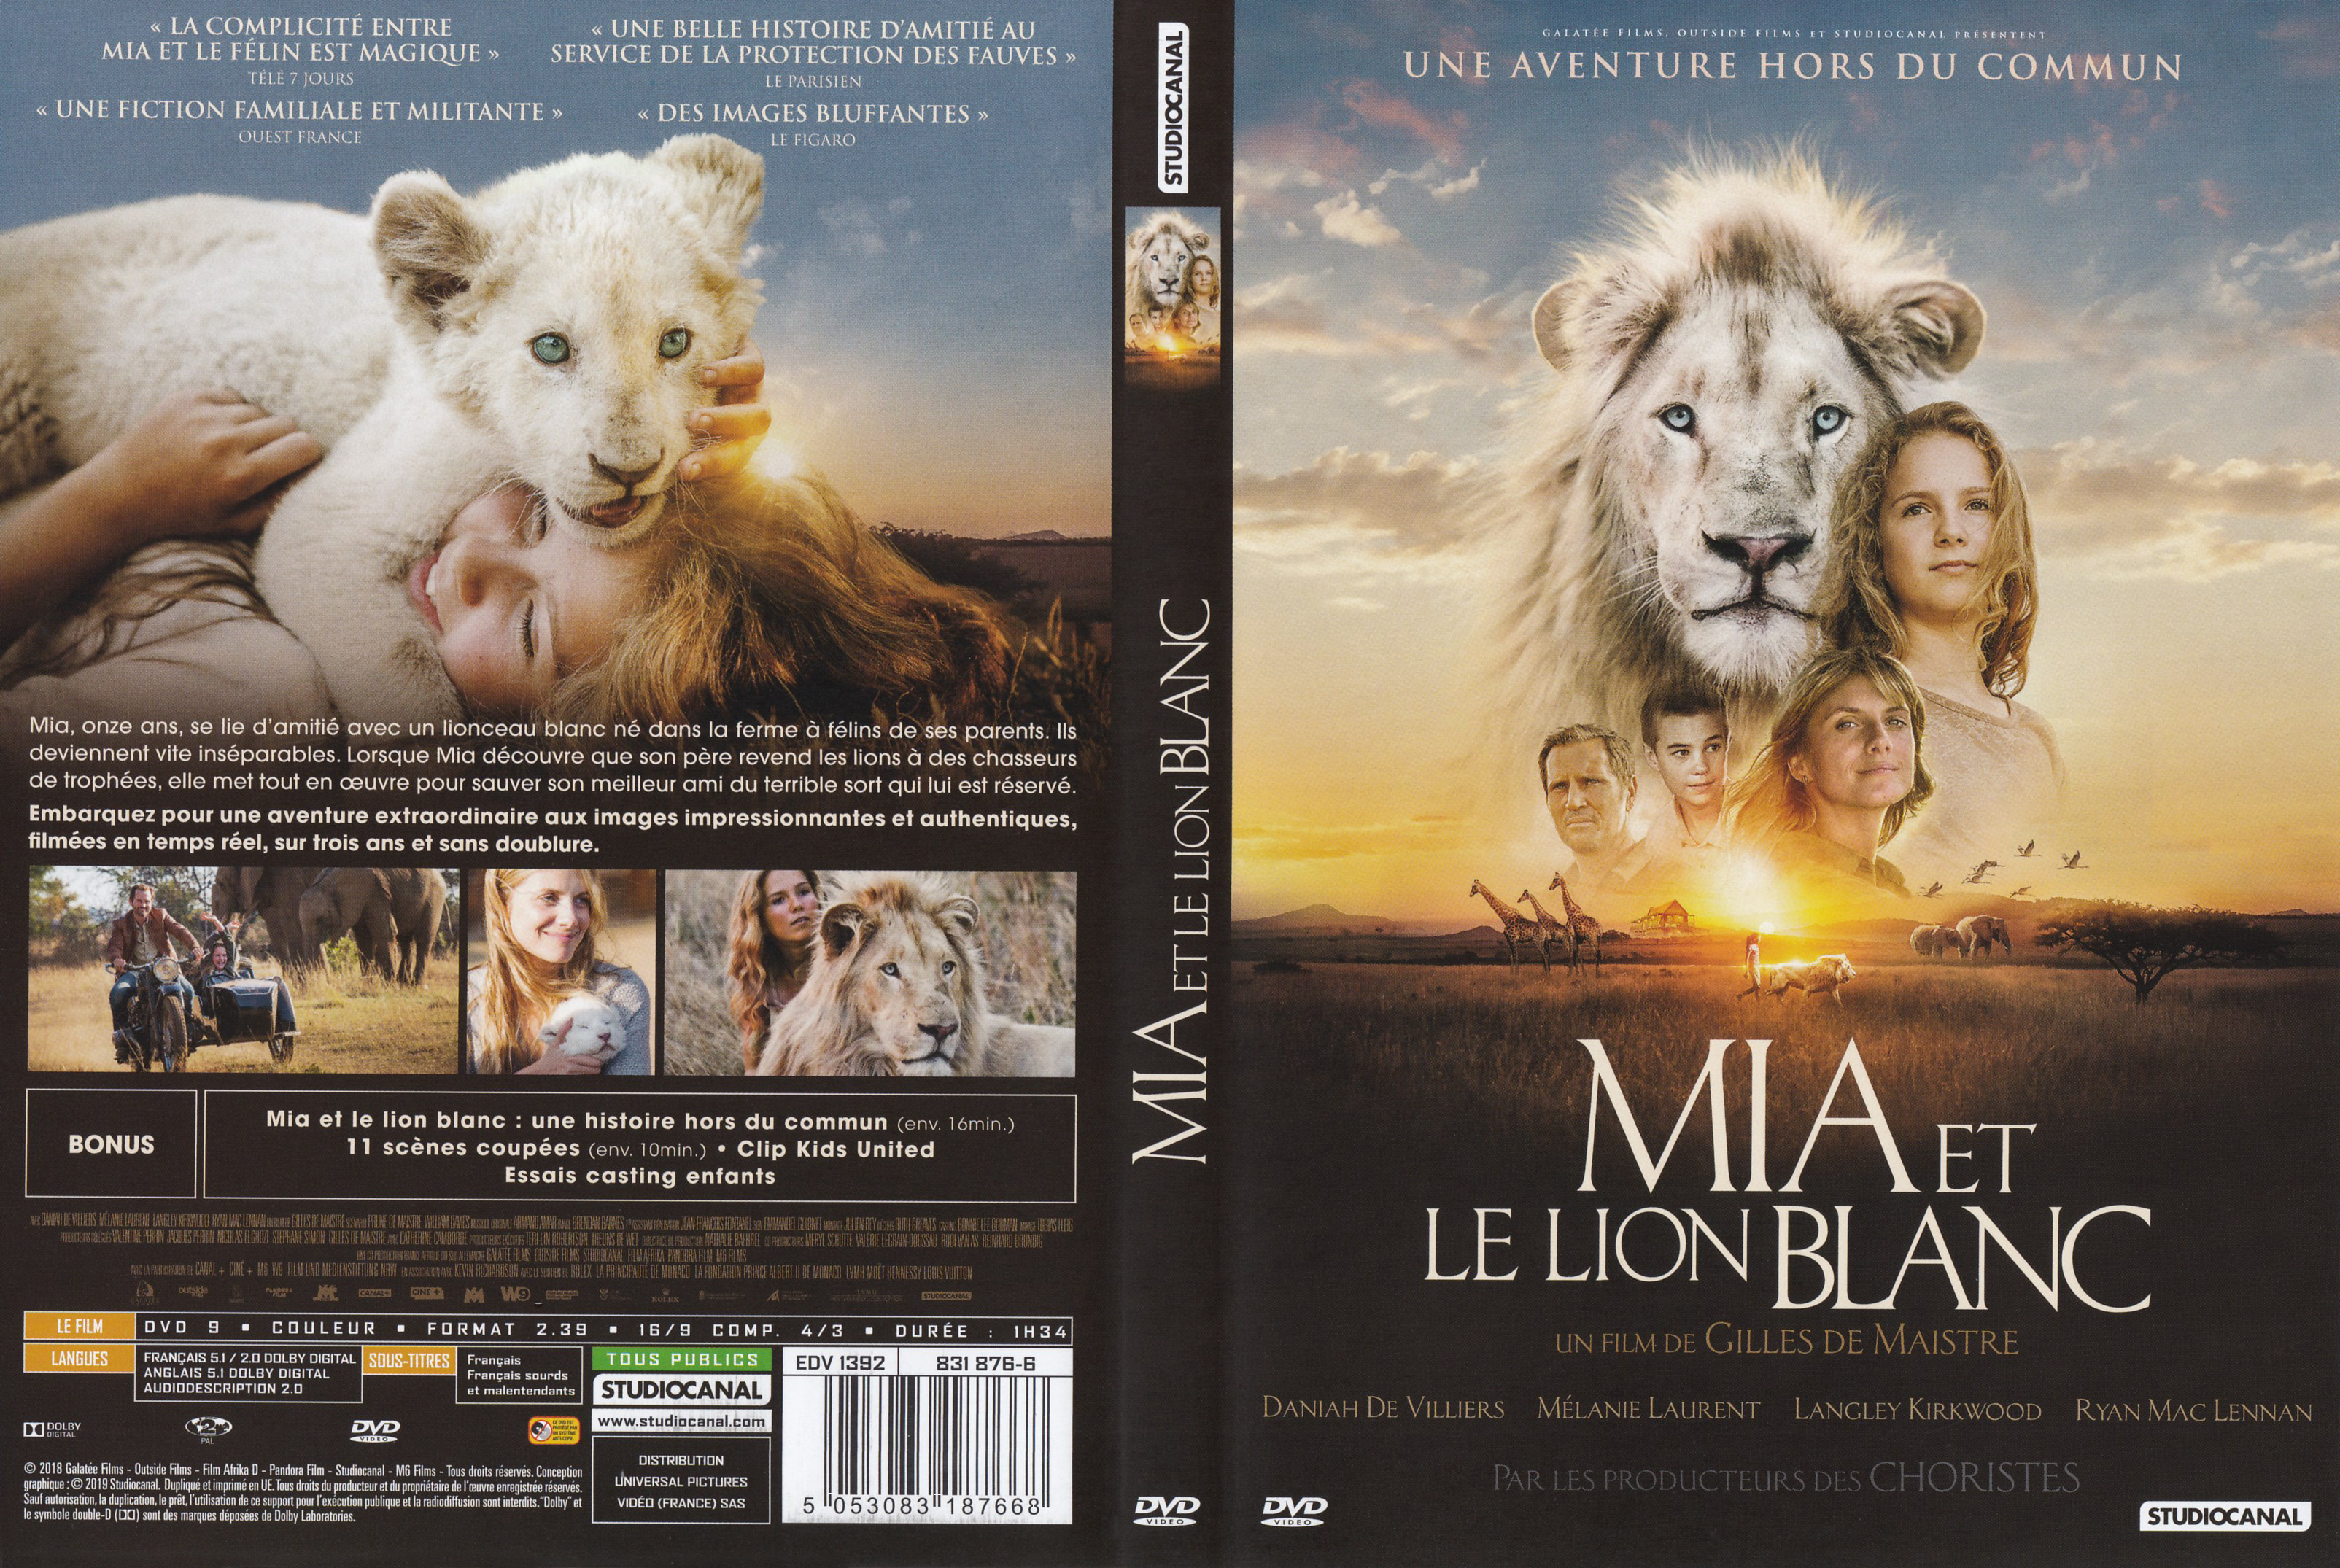 Jaquette DVD Mia et le lion blanc